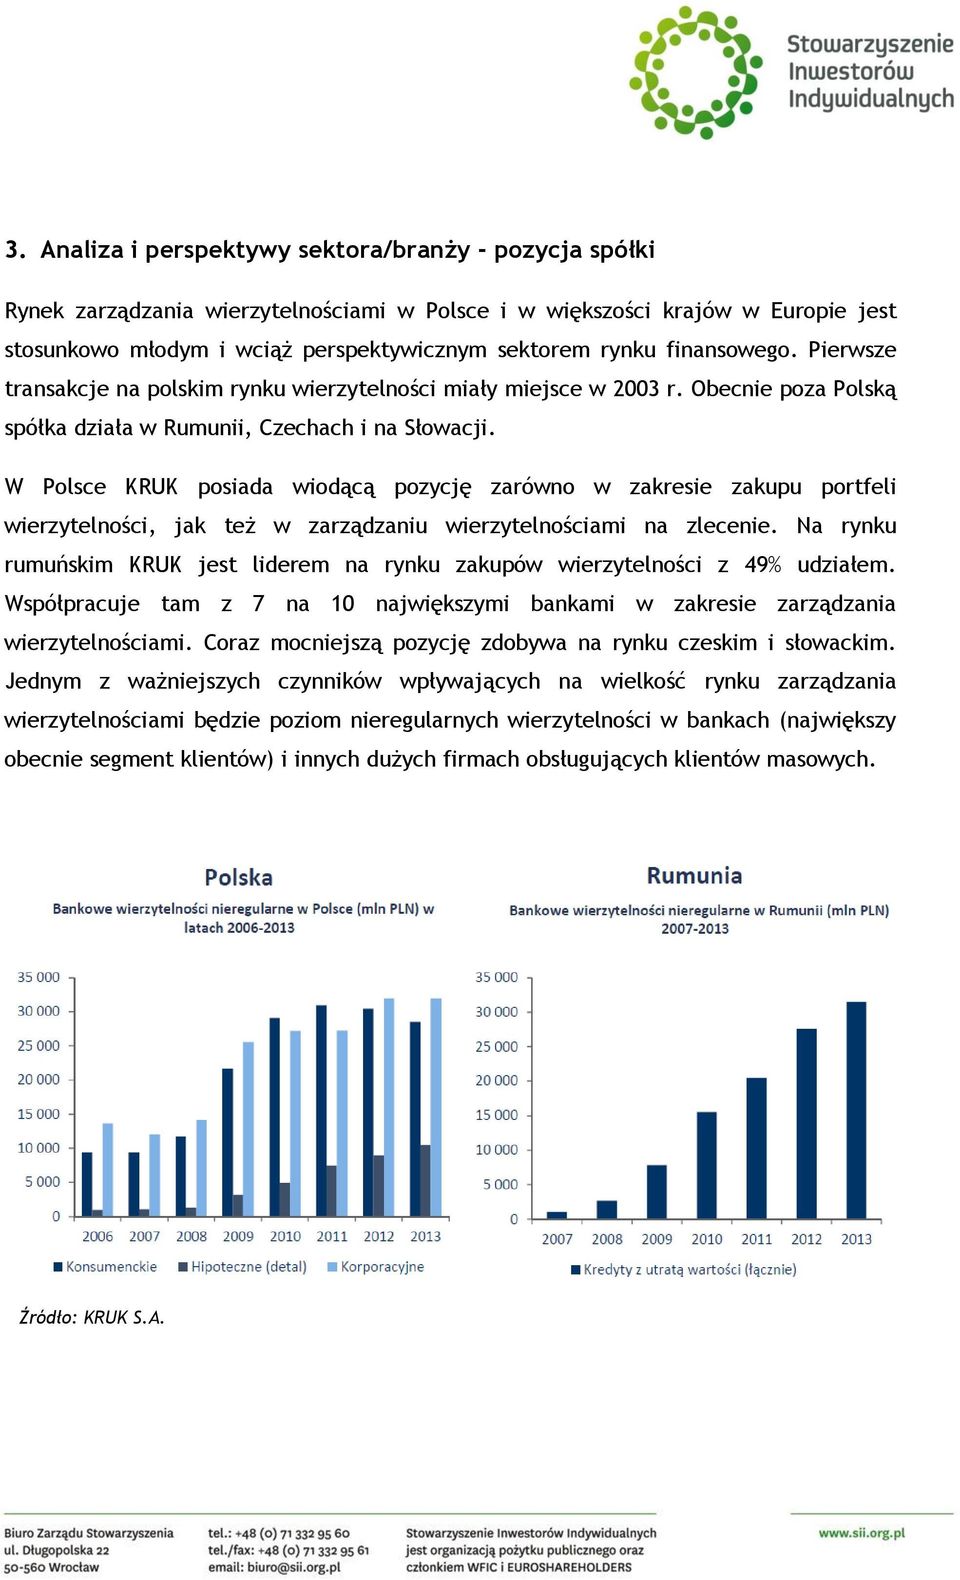 W Polsce KRUK posiada wiodącą pozycję zarówno w zakresie zakupu portfeli wierzytelności, jak też w zarządzaniu wierzytelnościami na zlecenie.